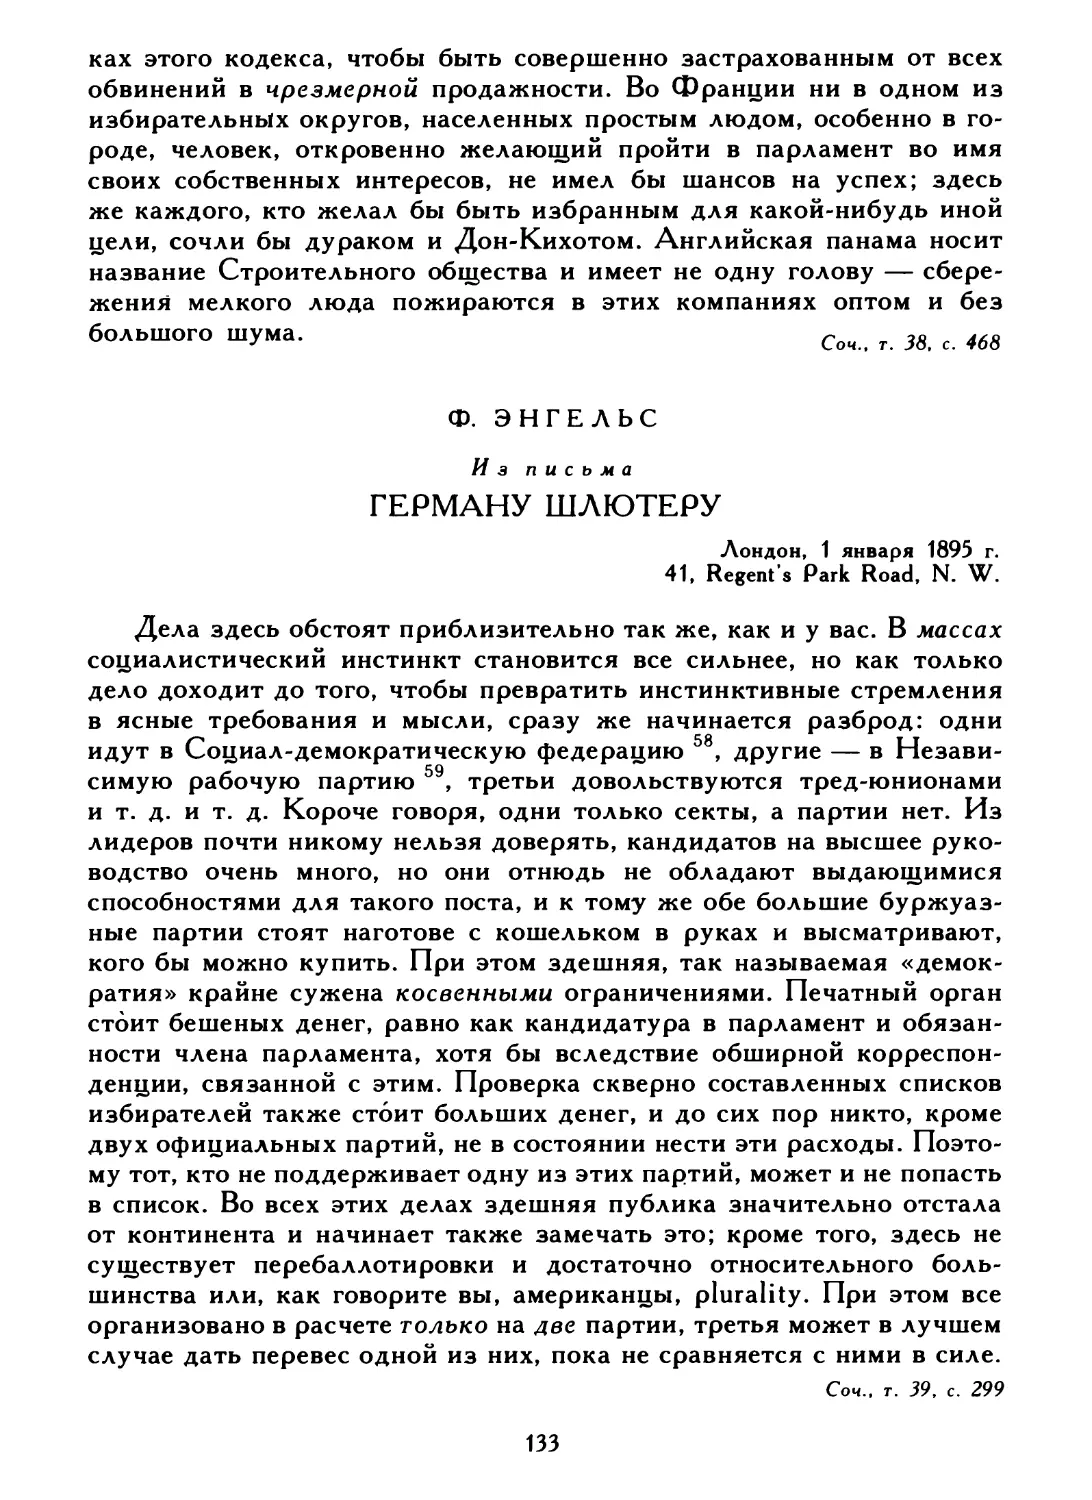 Ф. Энгельс. Из письма Герману Шлютеру, 1 января 1895 г.